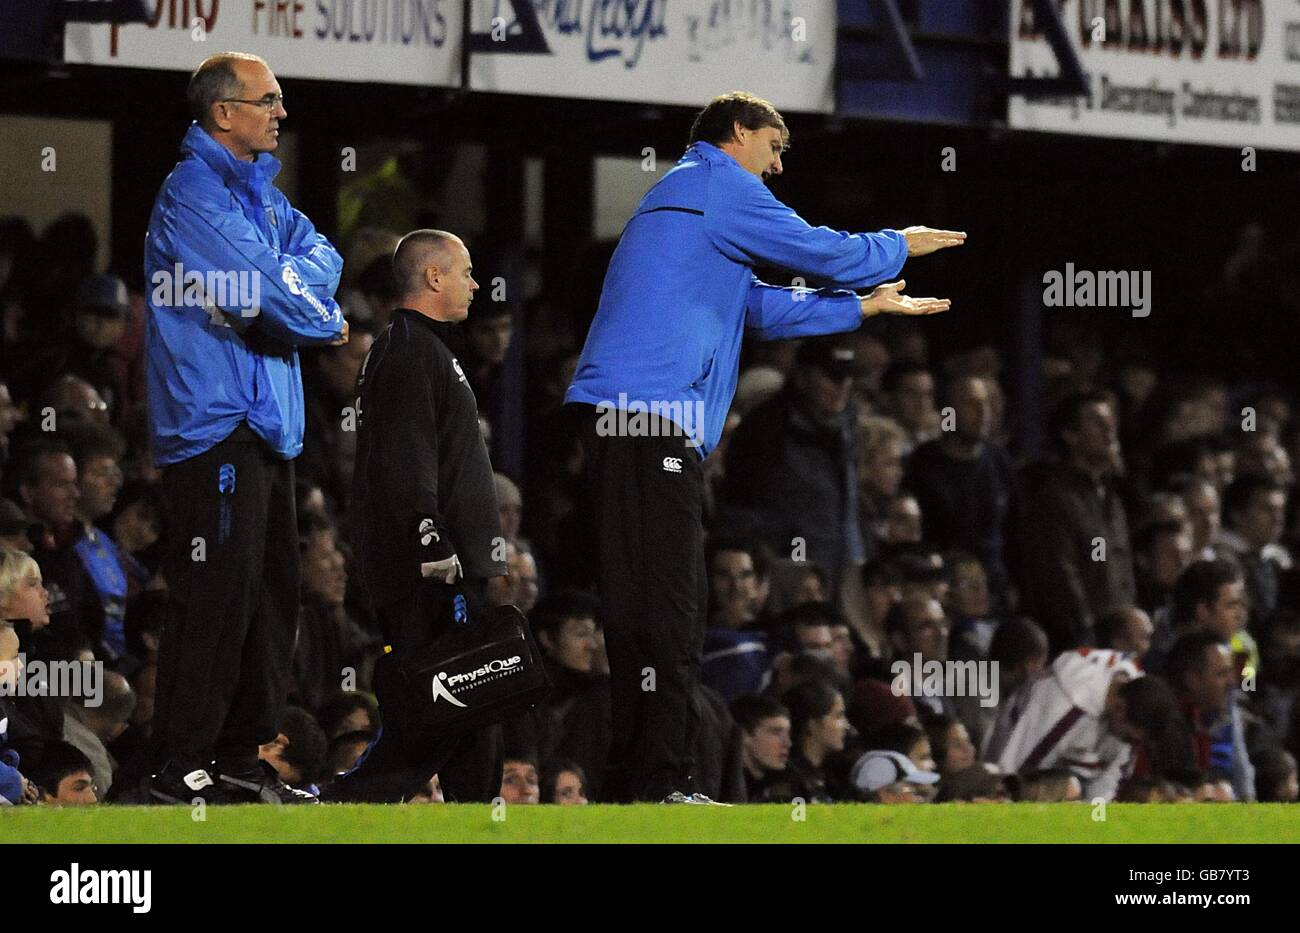 Fútbol - Barclays Premier League - Portsmouth v Fulham - Fratton Park. Joe Jordan (izquierda), el subdirector de Portsmouth, y Tony Adams, el gerente de asistencia, en la línea de contacto durante el partido. Foto de stock